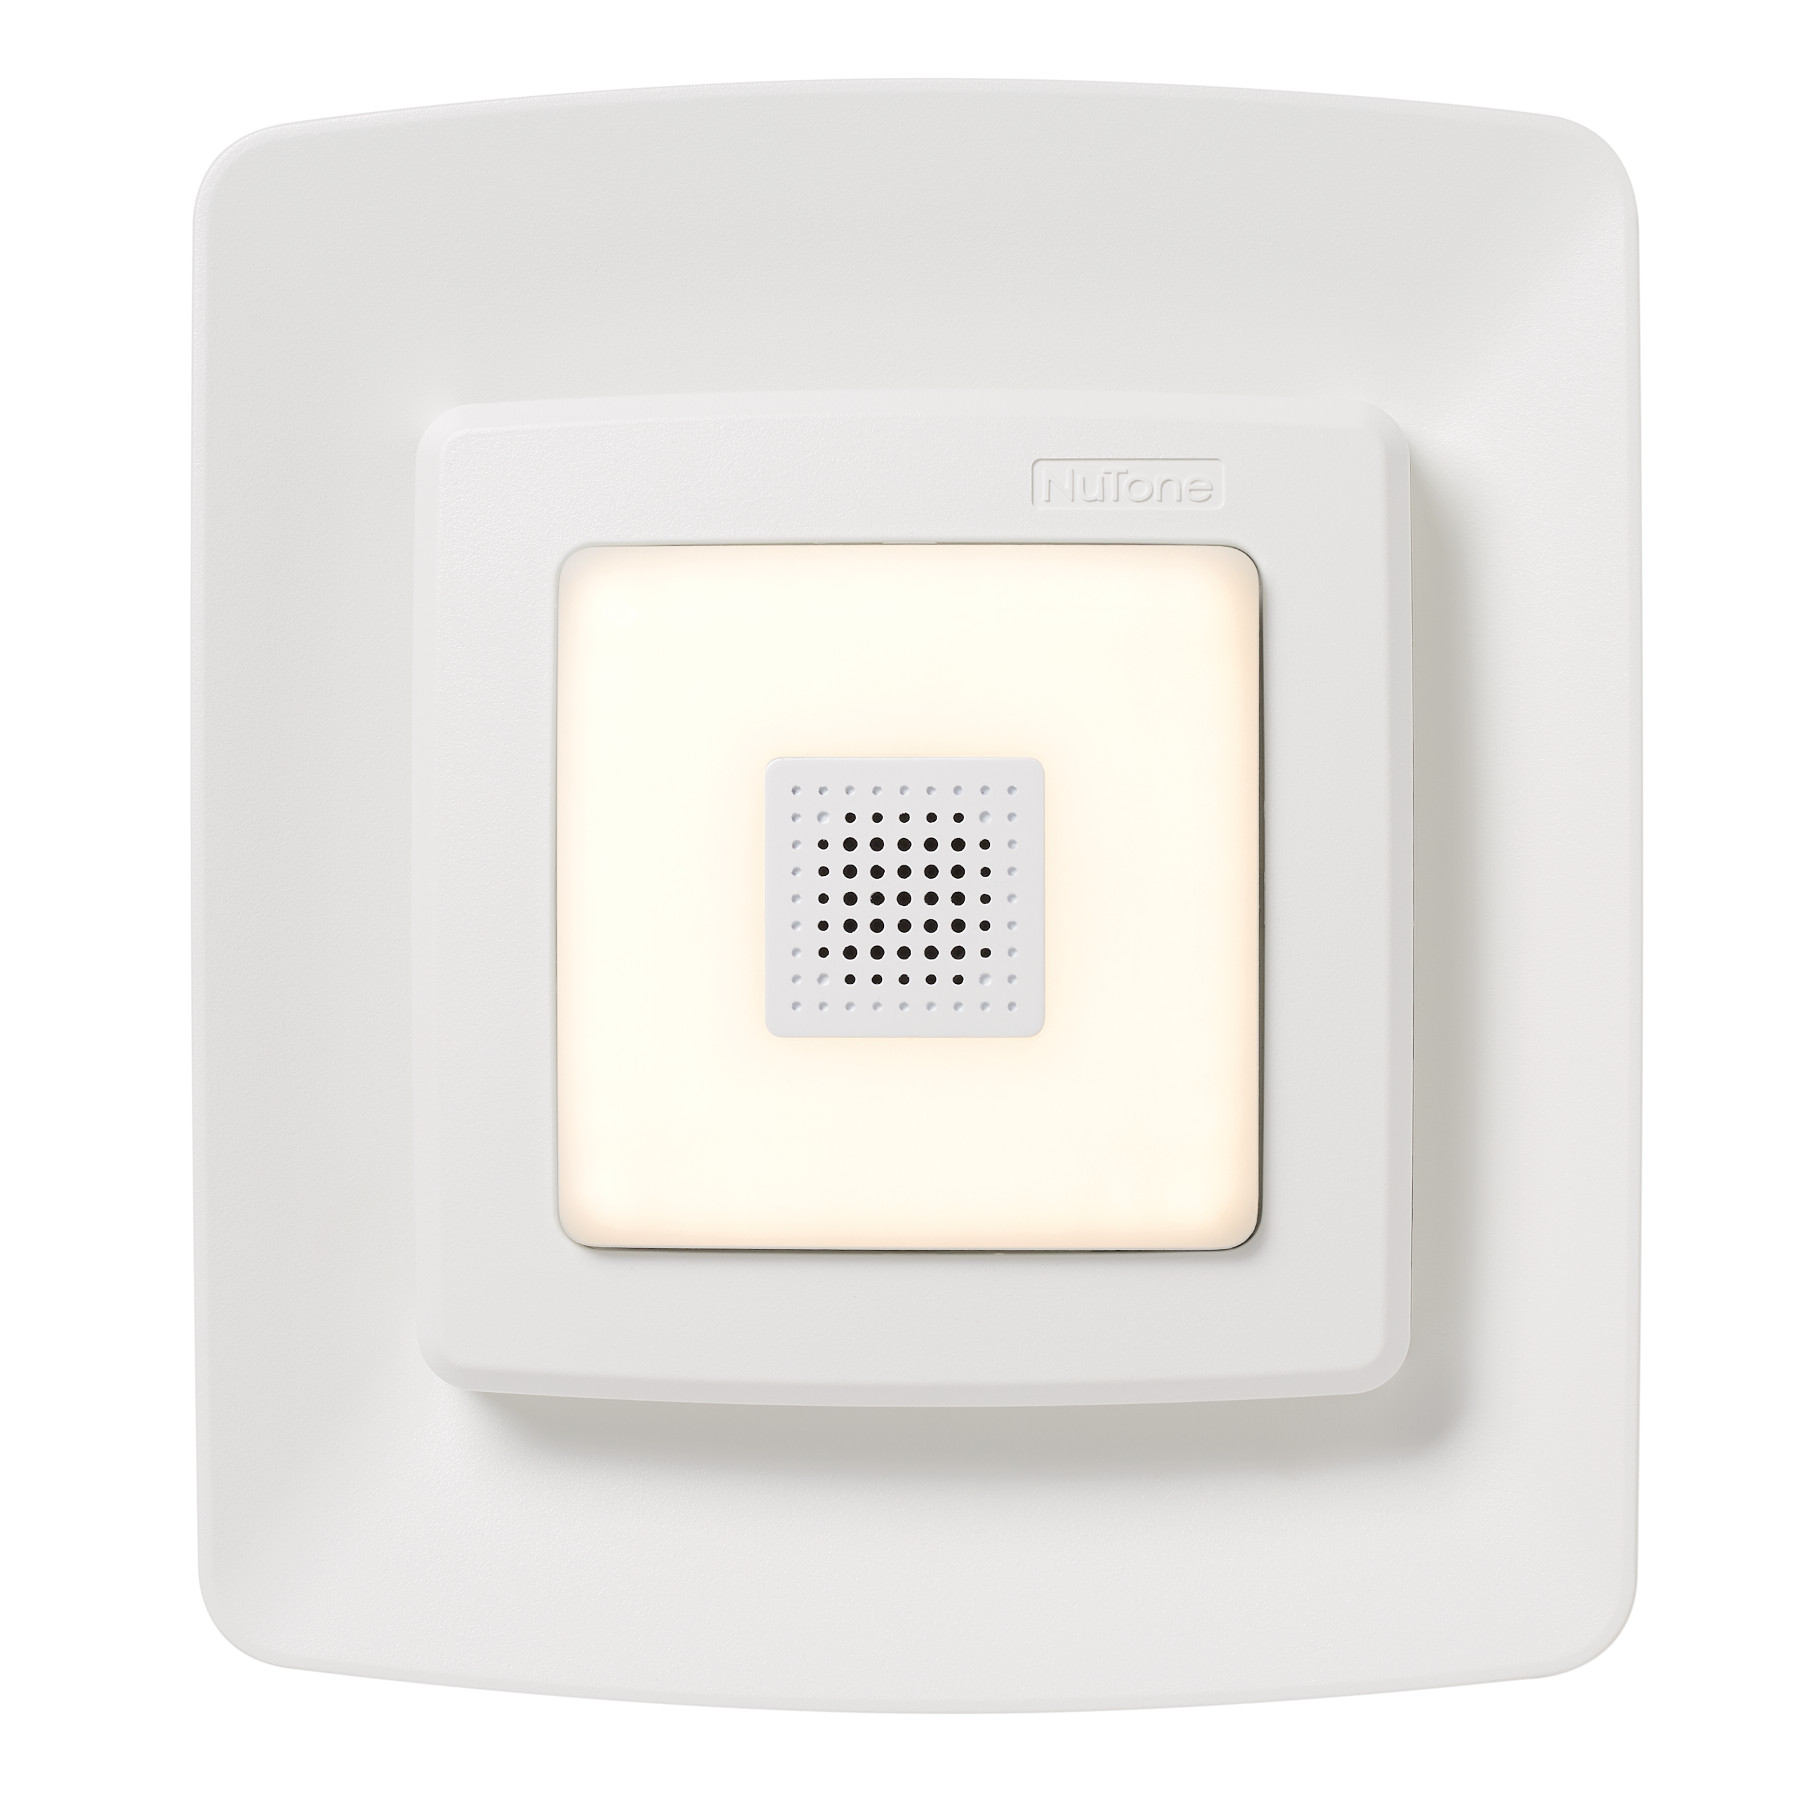 Ventilateur de salle de bain à pose rapide NuTone avec éclairage à DEL et haut-parleur Bluetooth® Sensonic